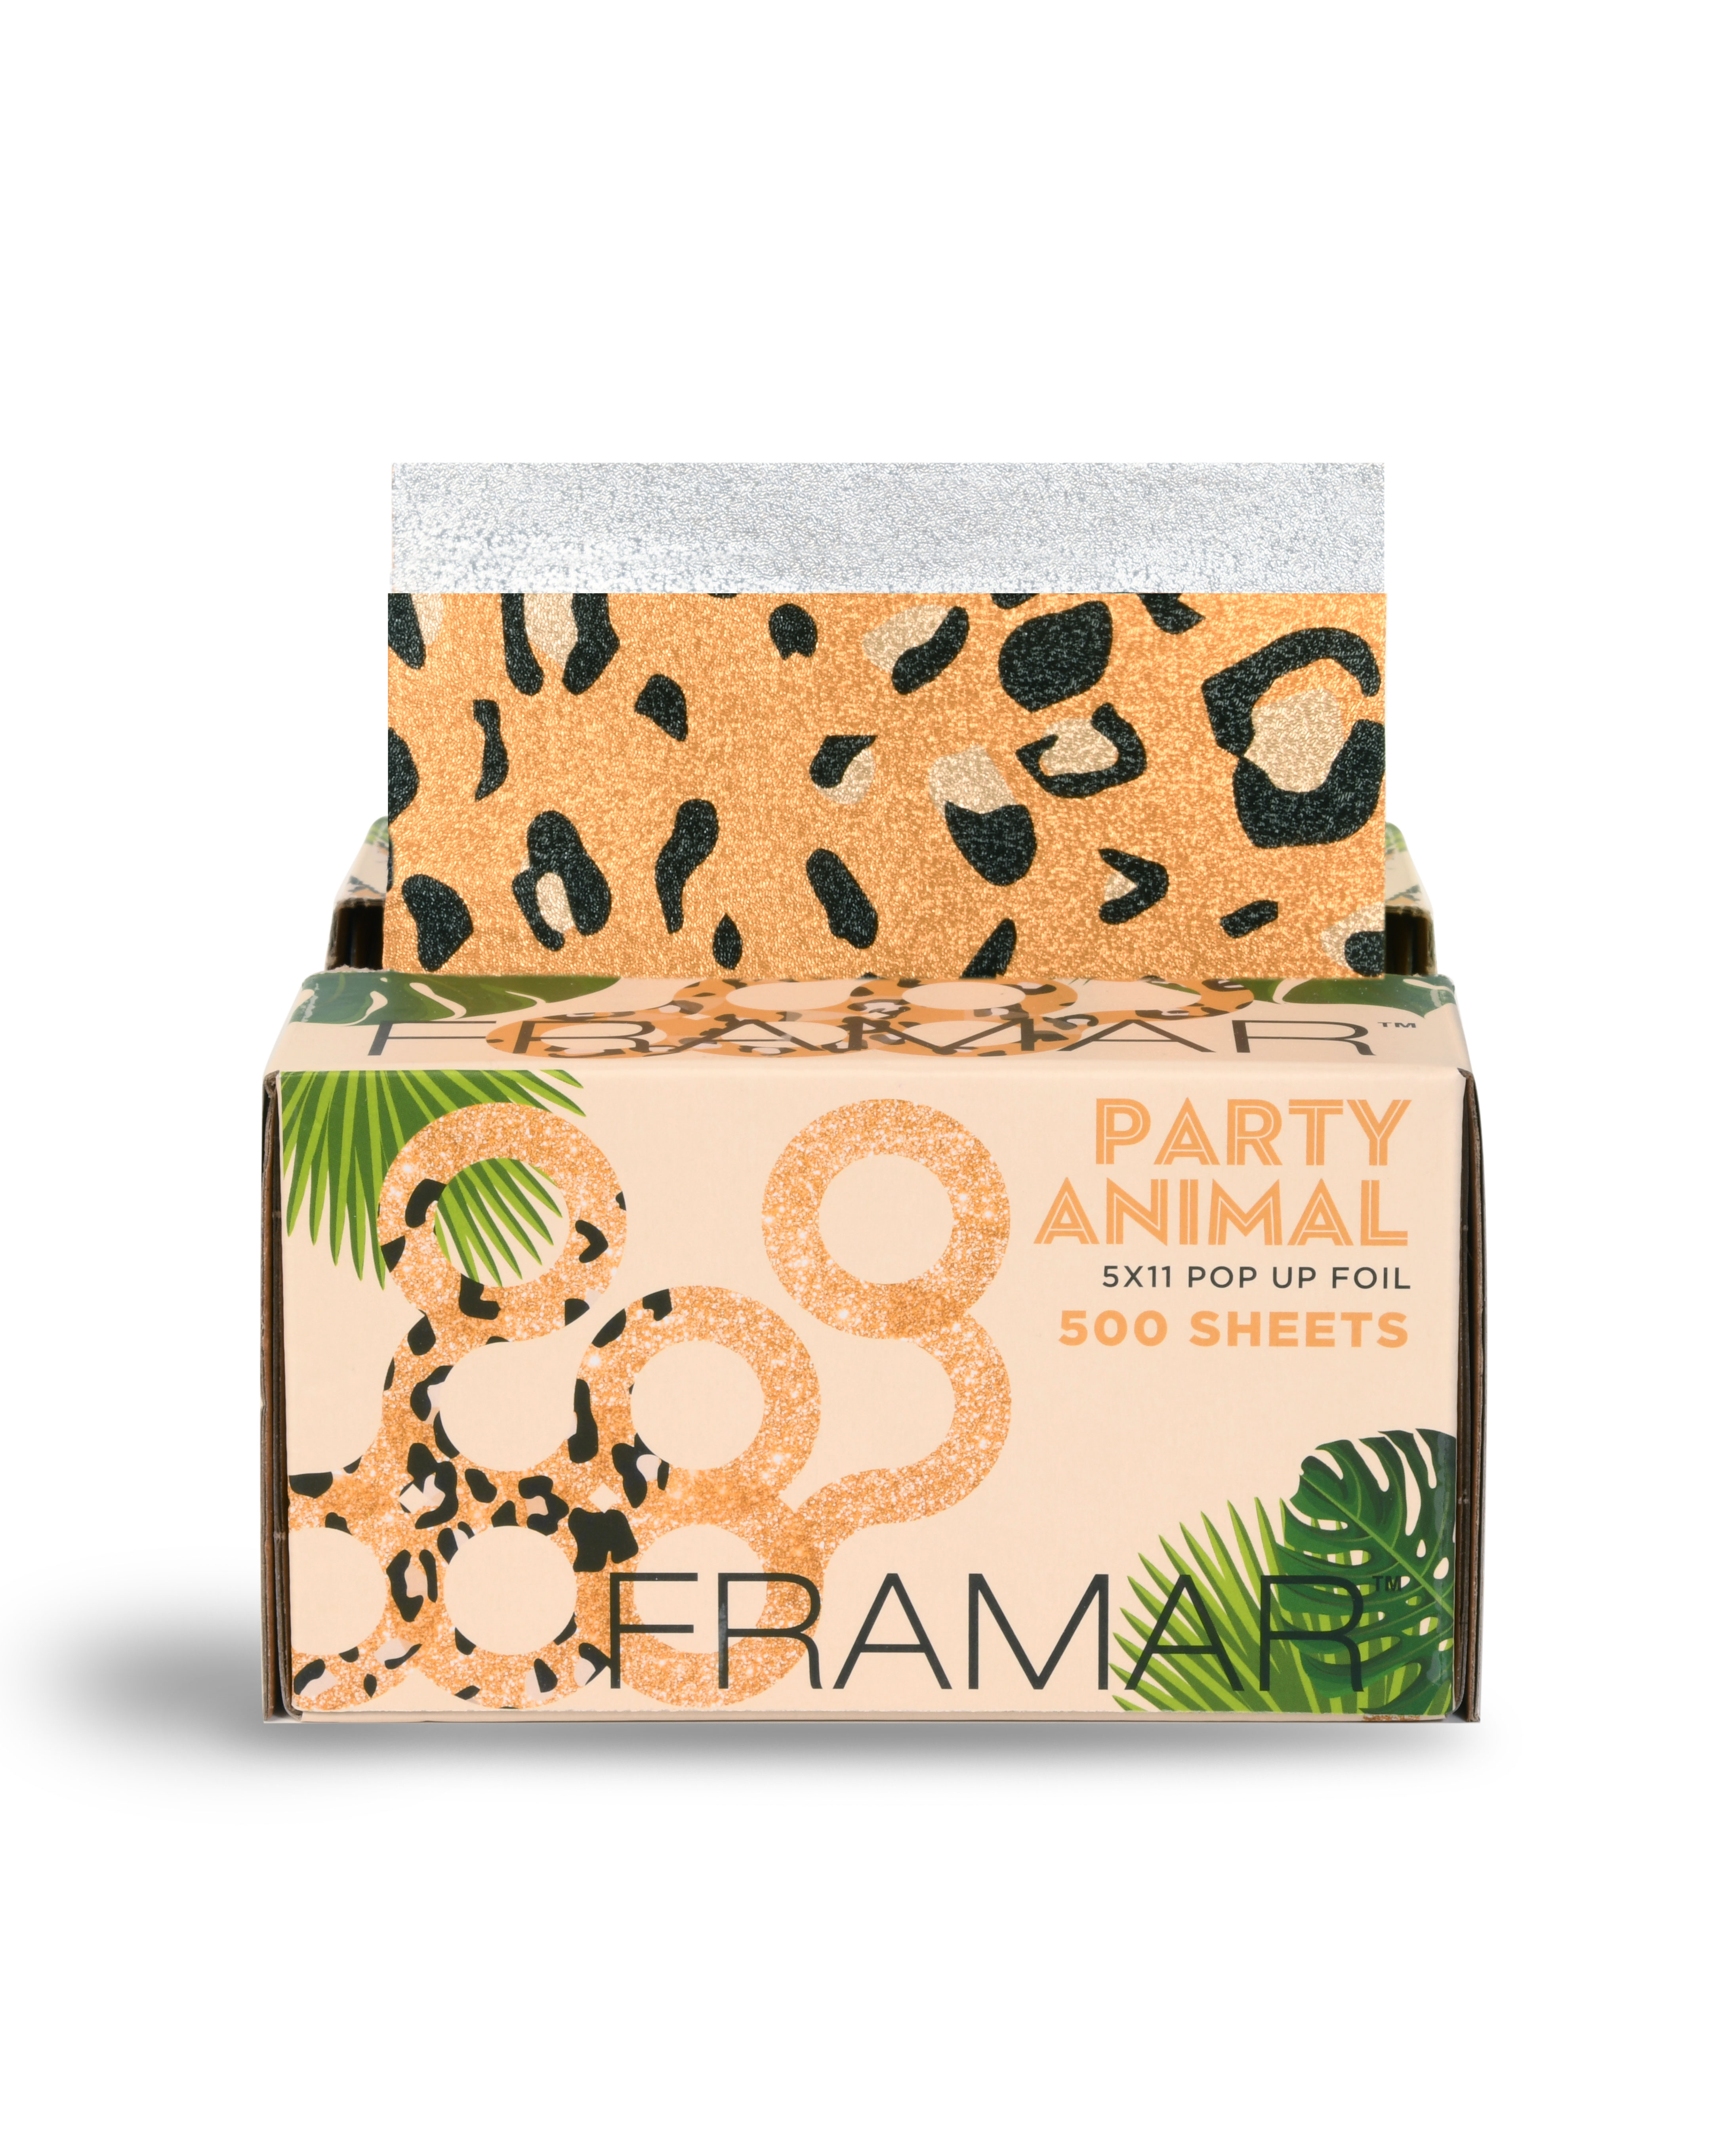 FRAMAR Party Animal Pop Up Foil